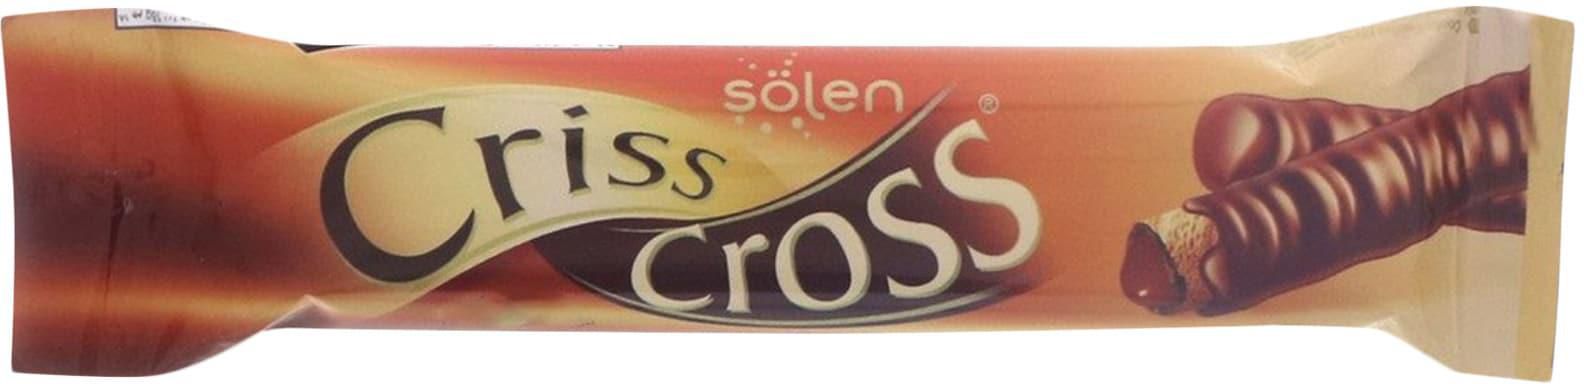 Solen Criss Cross Hazelnut Wafer 15g